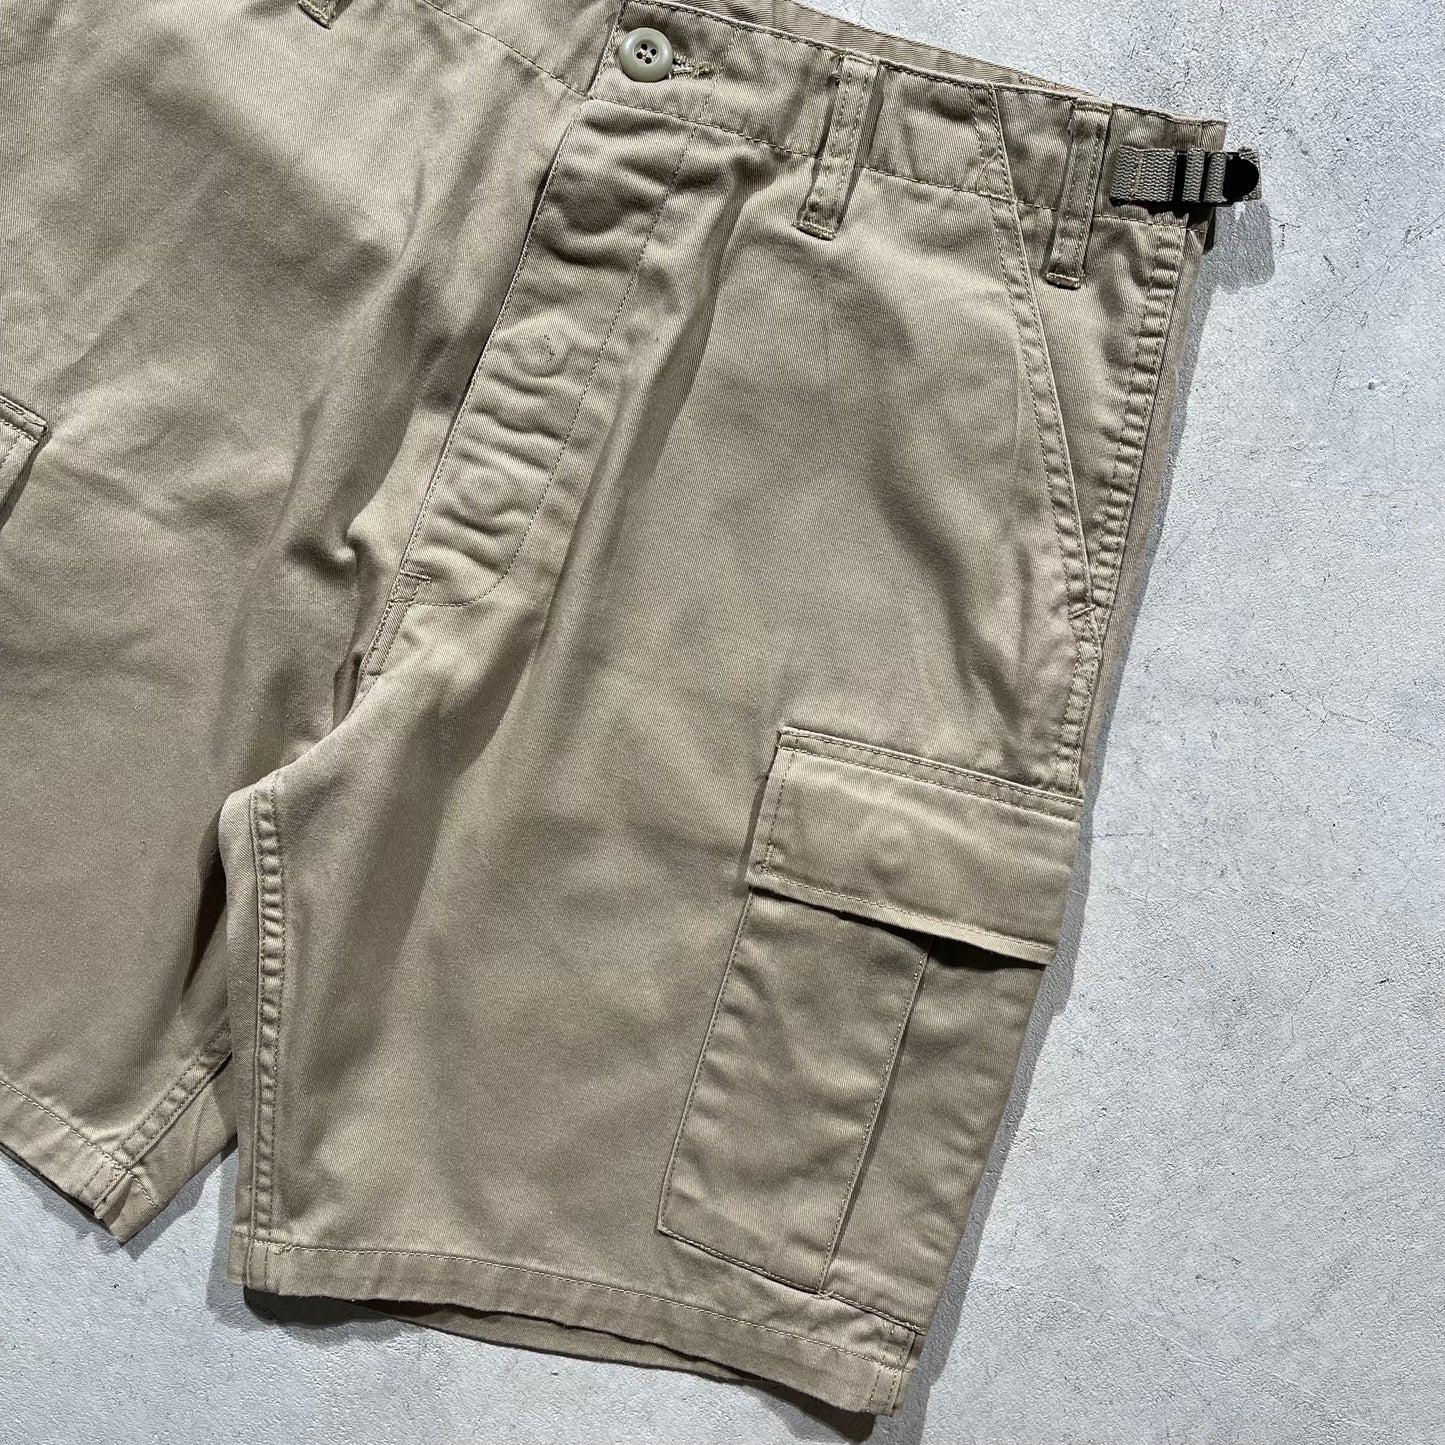 00s Army Khaki Shorts- 31